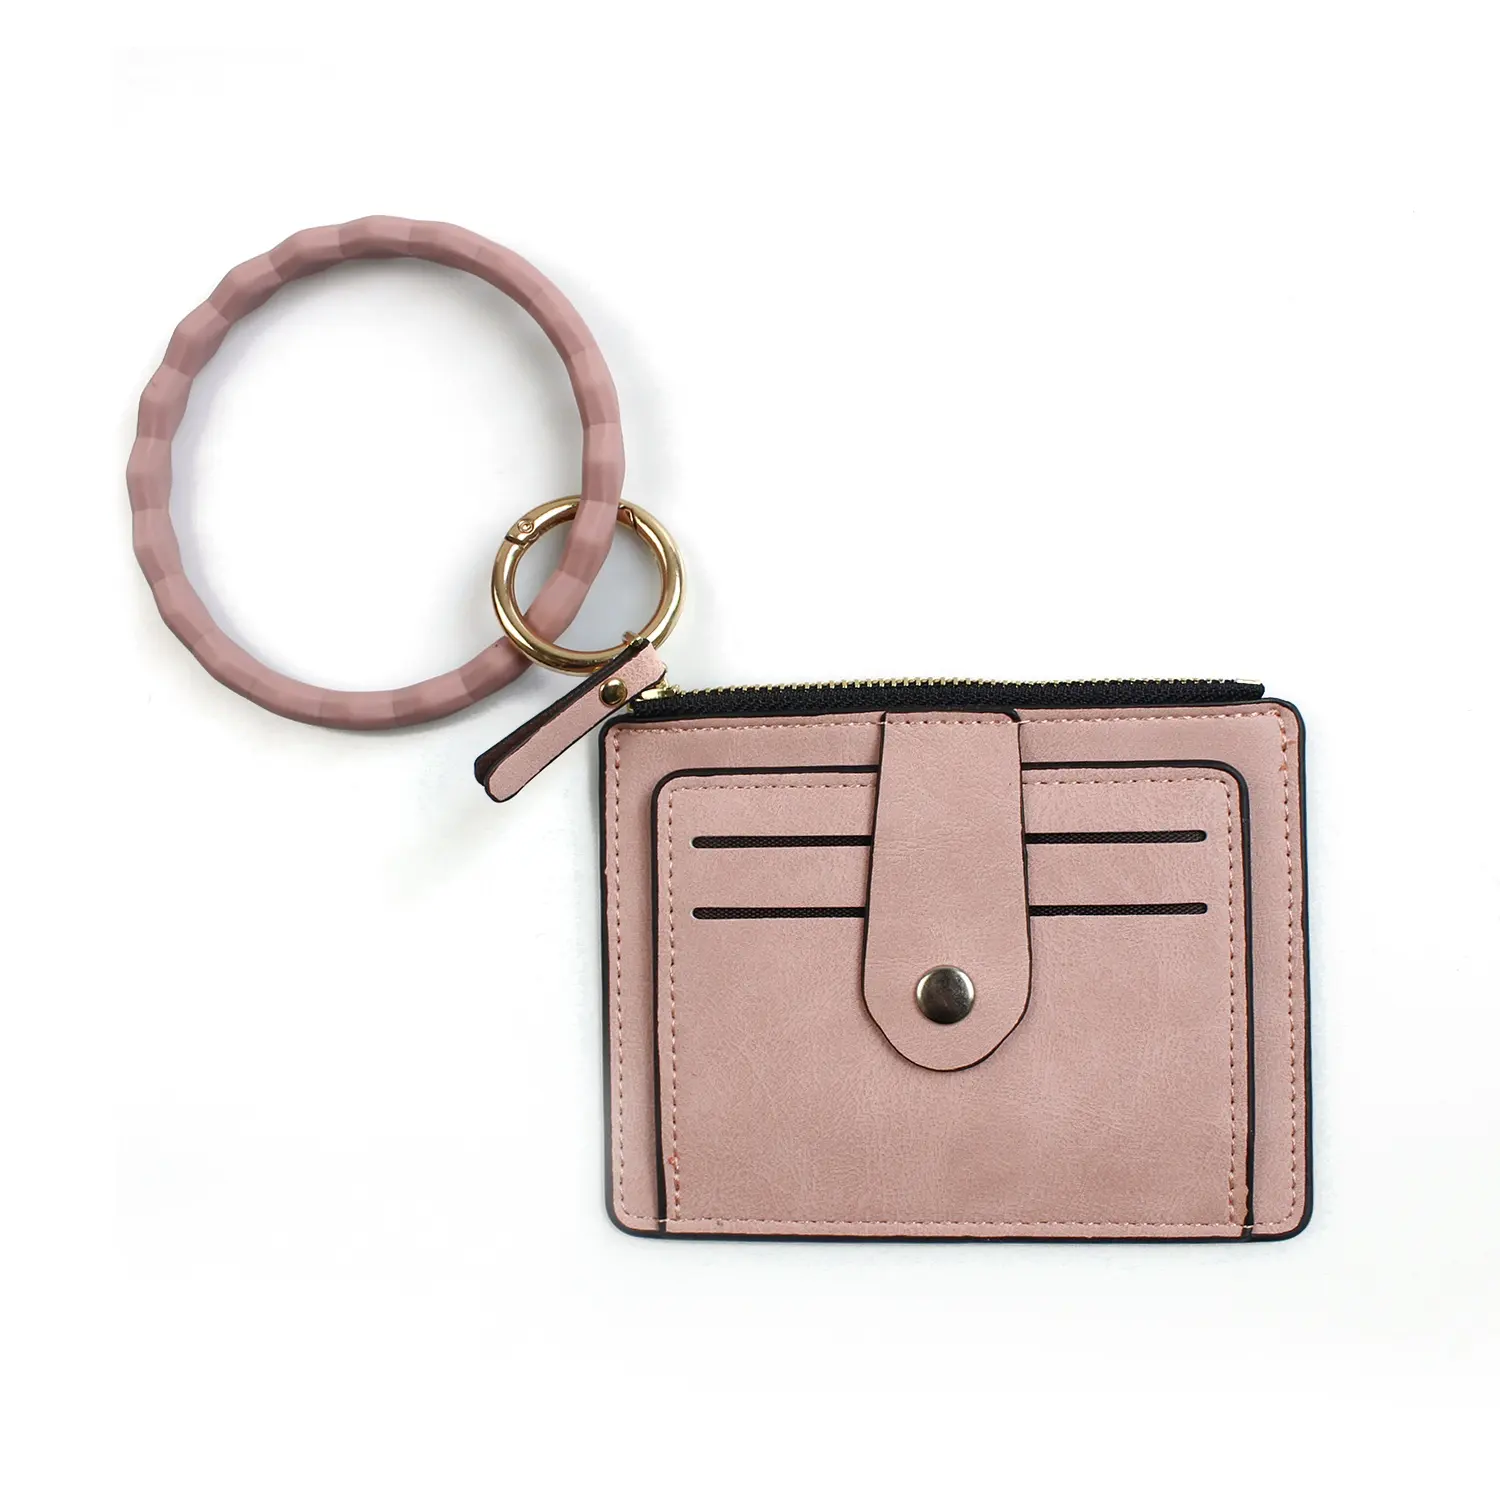 شعبية بو حافظة بطاقات جلدية زيبر محافظ حج حقيبة المحفظة مع الإسورة مفتاح سلسلة للنساء